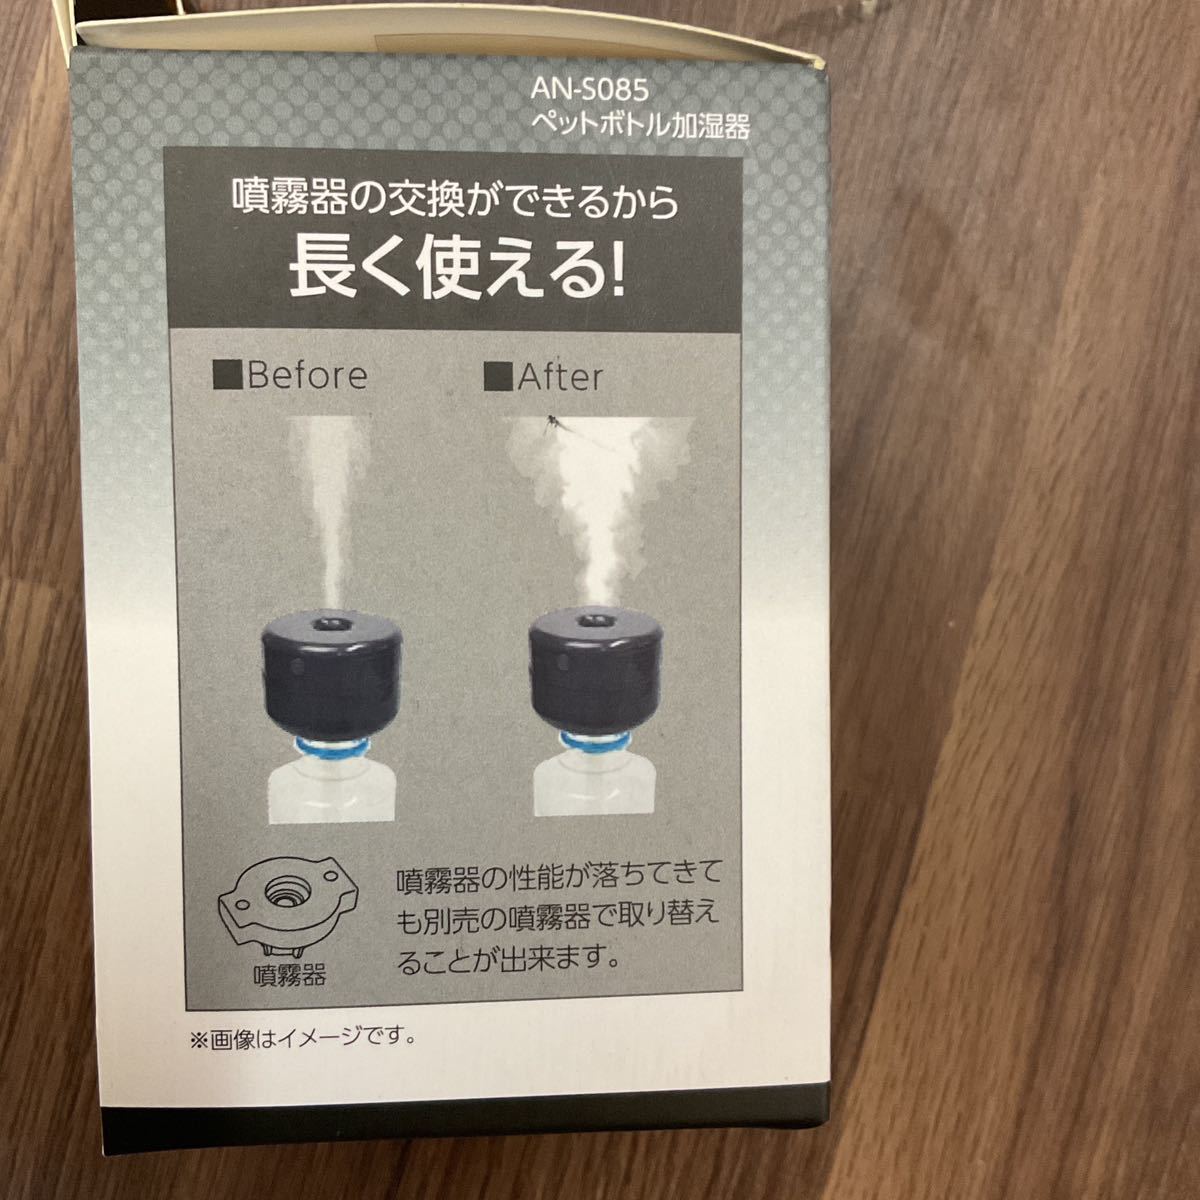  пластиковая бутылка Ultrasonic System увлажнитель не использовался товар ④ USB заряжающийся увлажнение количество 28ml/h бренд * производитель :KEIYO AN-S085